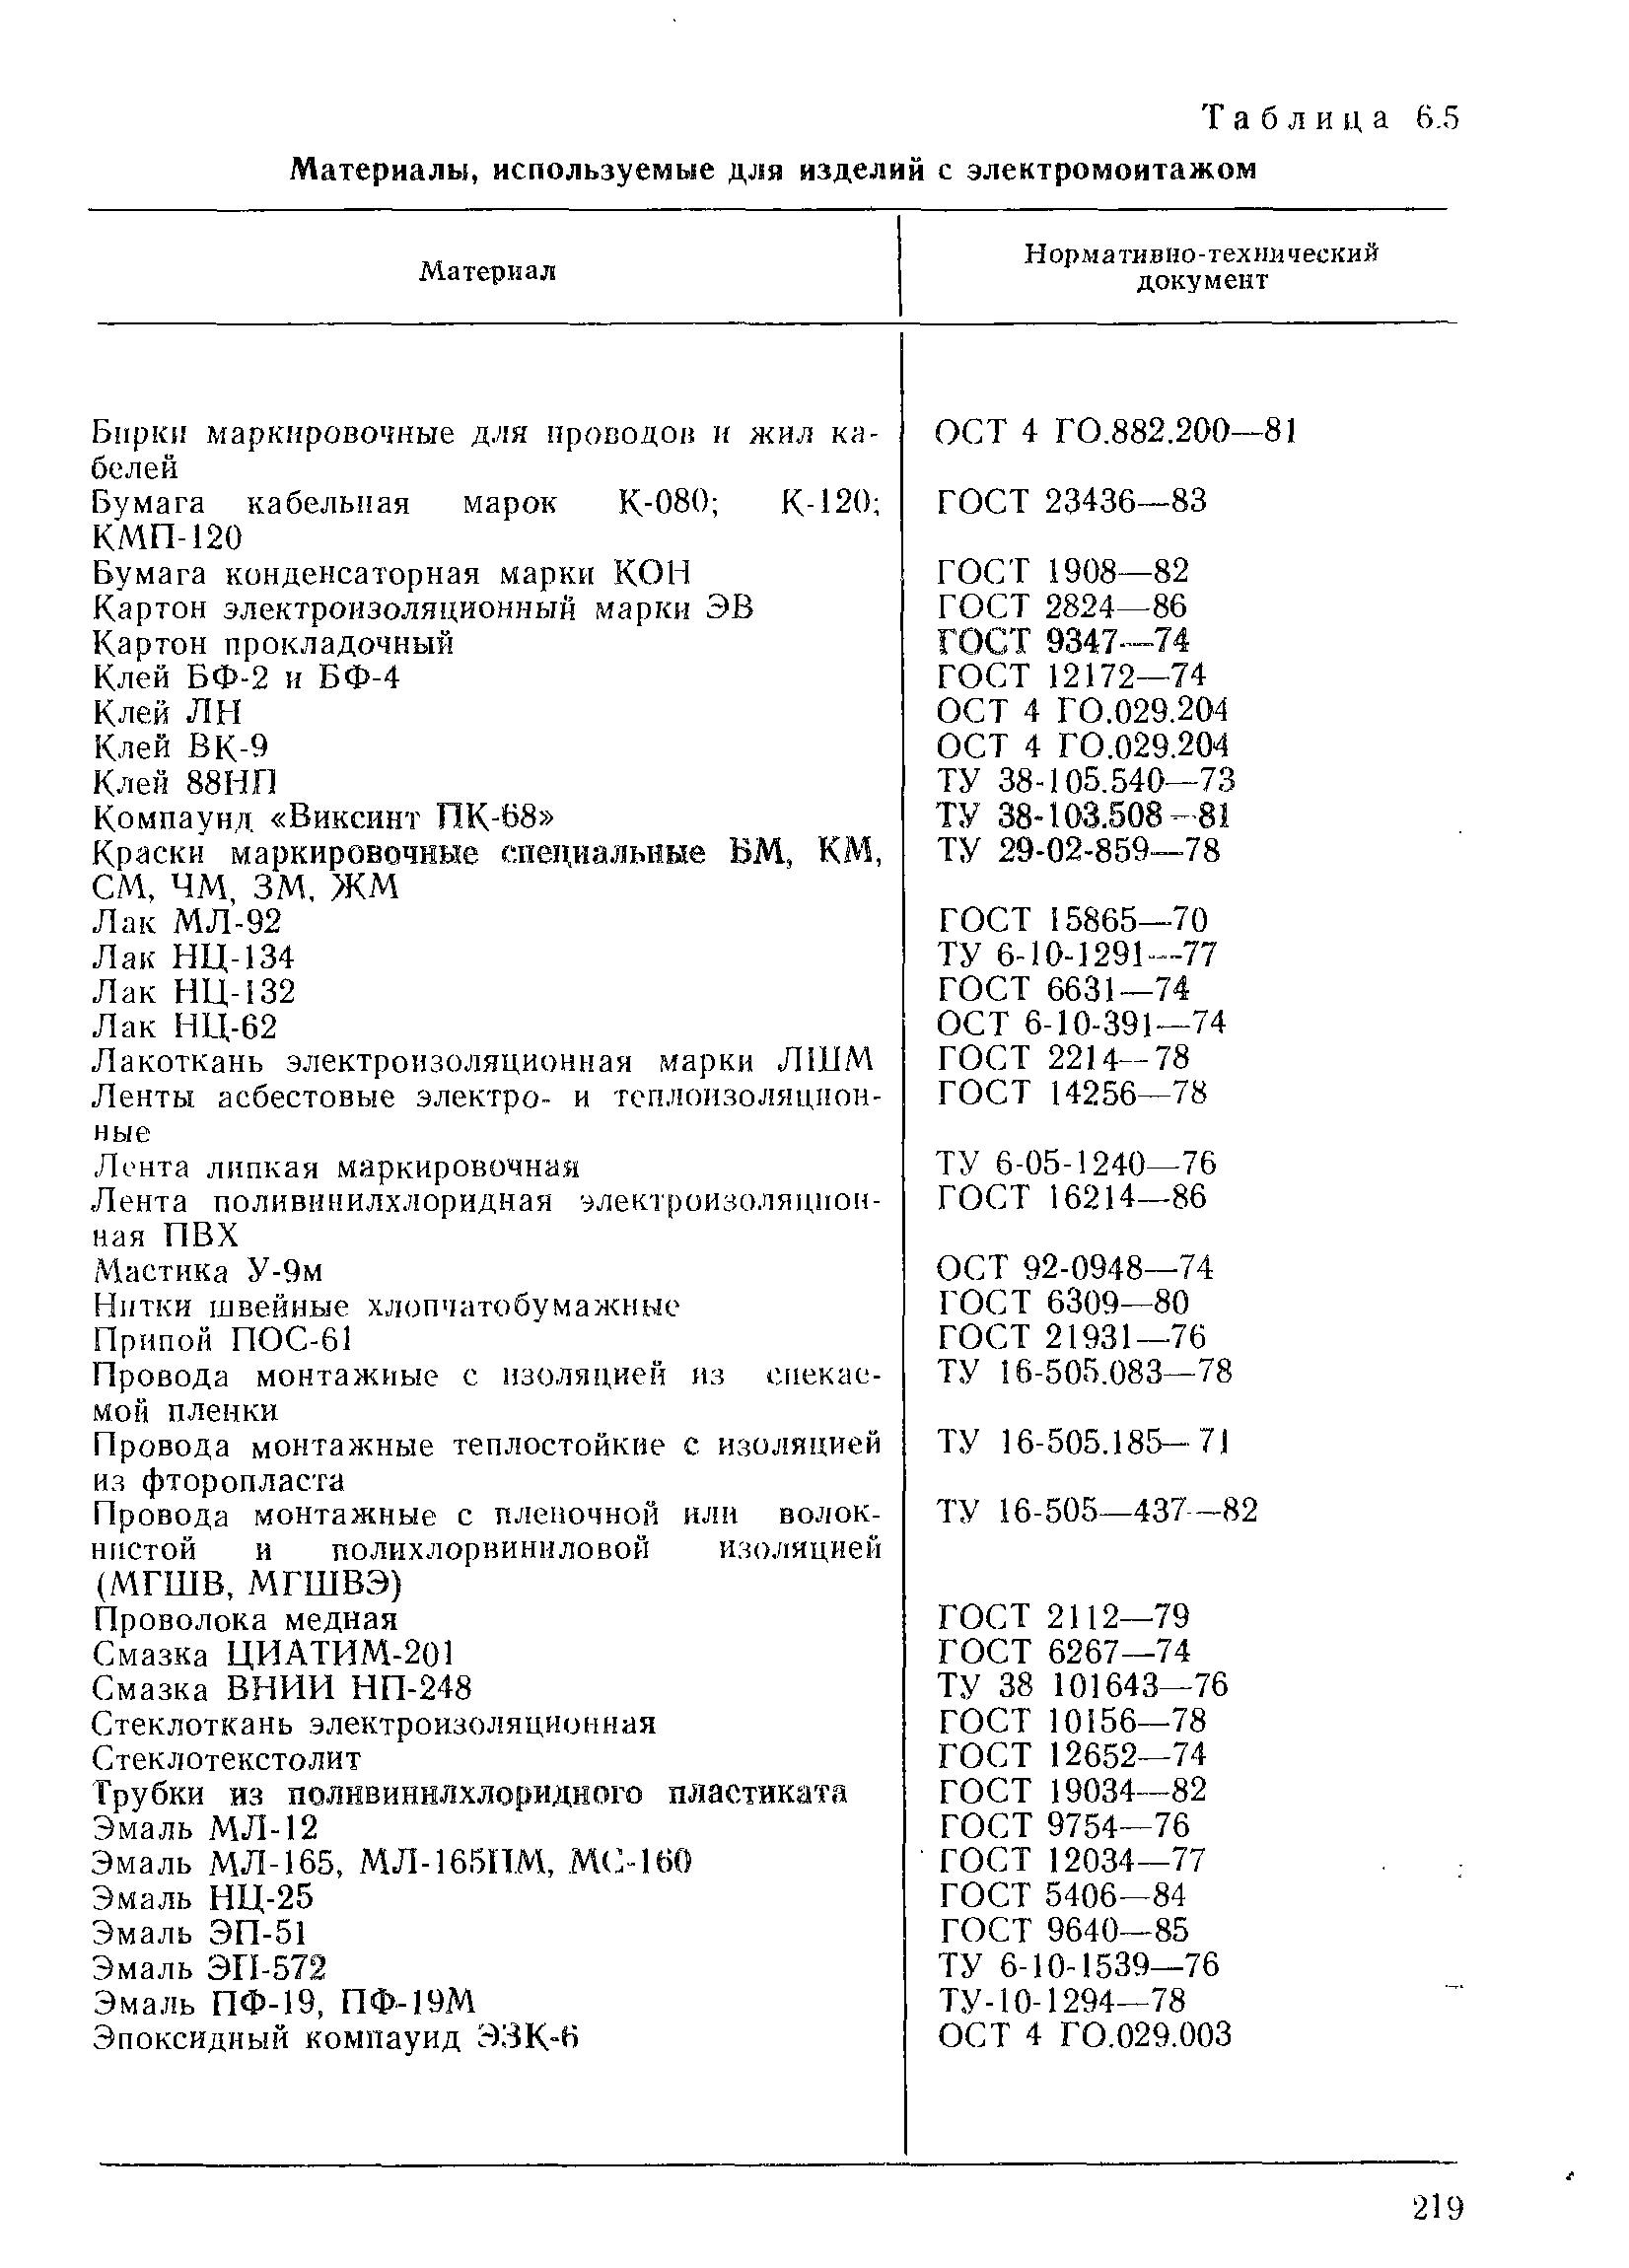 Таблица 6.5 Материалы, используемые для изделий с электромонтажом
